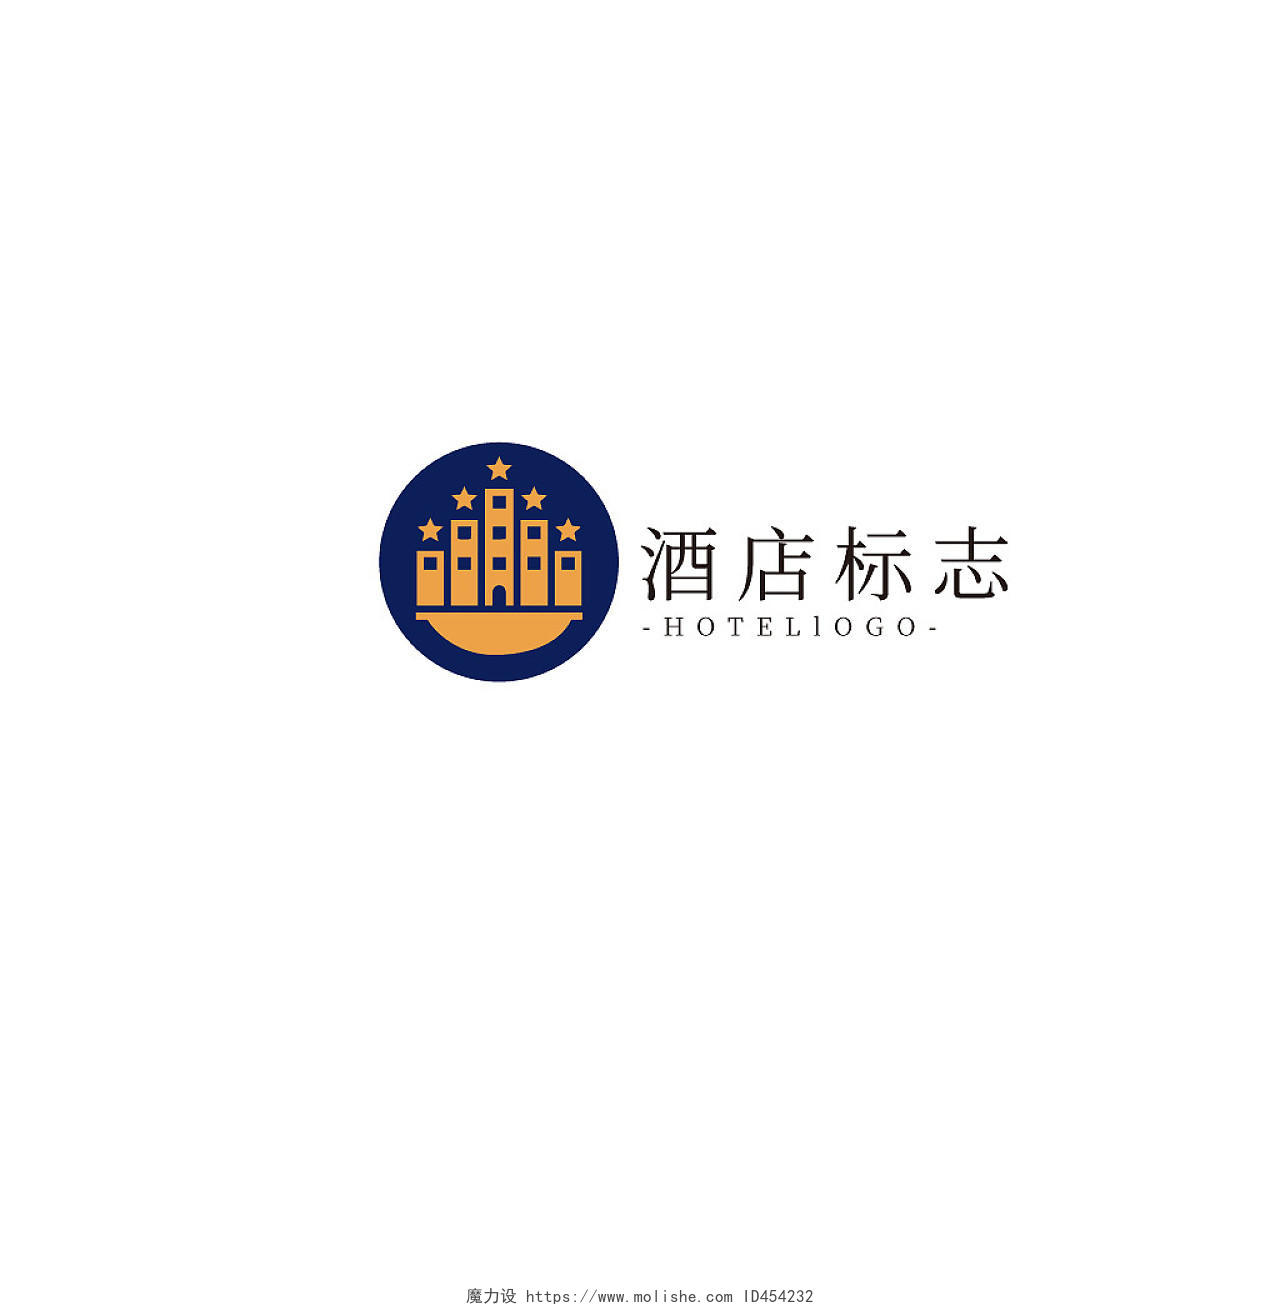 黄紫几何卡通商务风酒店标志LOGO酒店logo